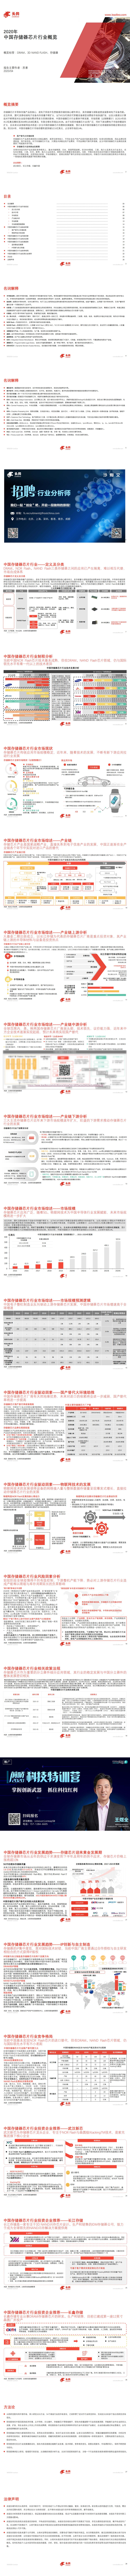 【头豹】2020年中国存储器芯片行业概览_0.jpg